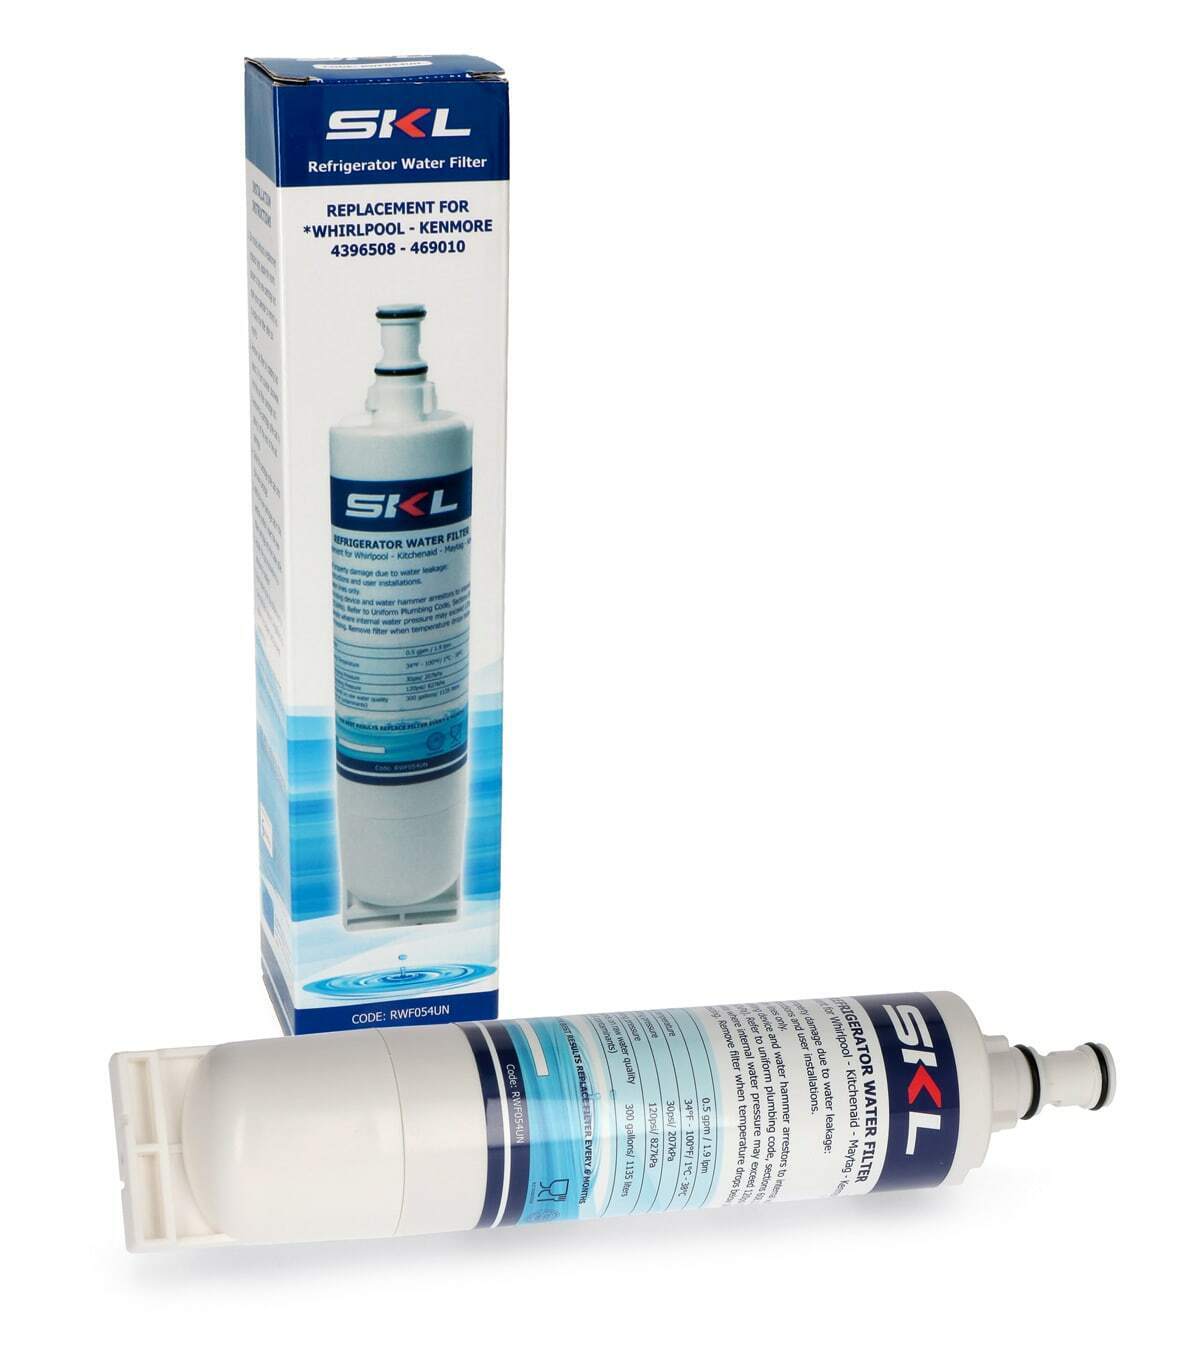 SKL filtro acqua potabile universale purificatore depuratore